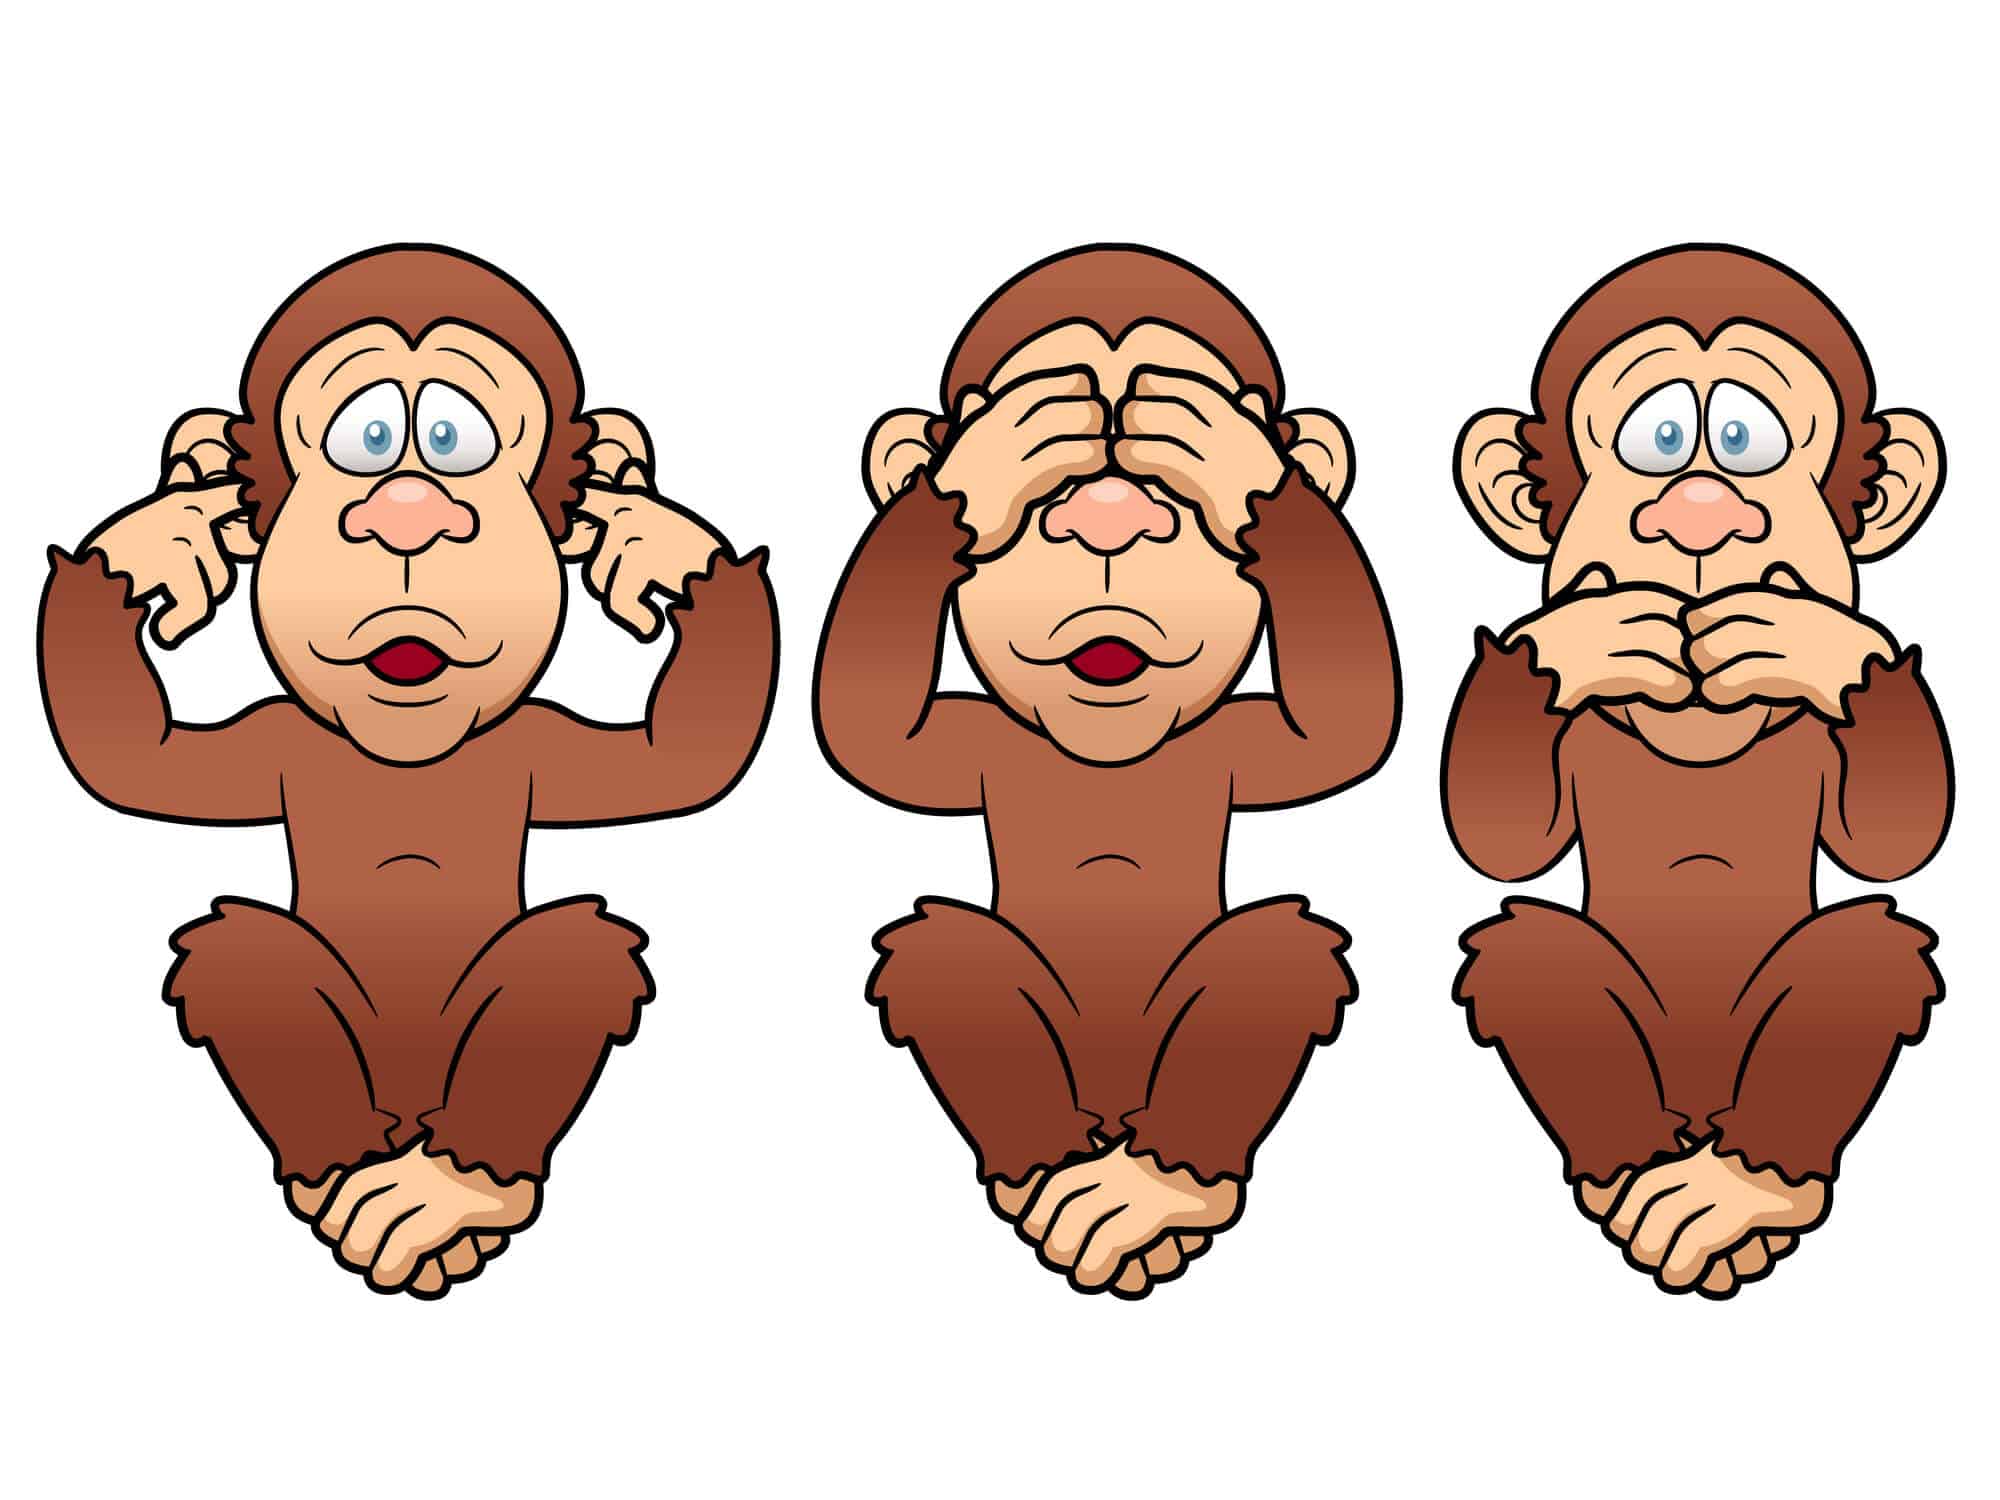 שלושת הקופים - המחשה לתהליך ההטפשה. <a href="https://depositphotos.com. ">איור: depositphotos.com</a>